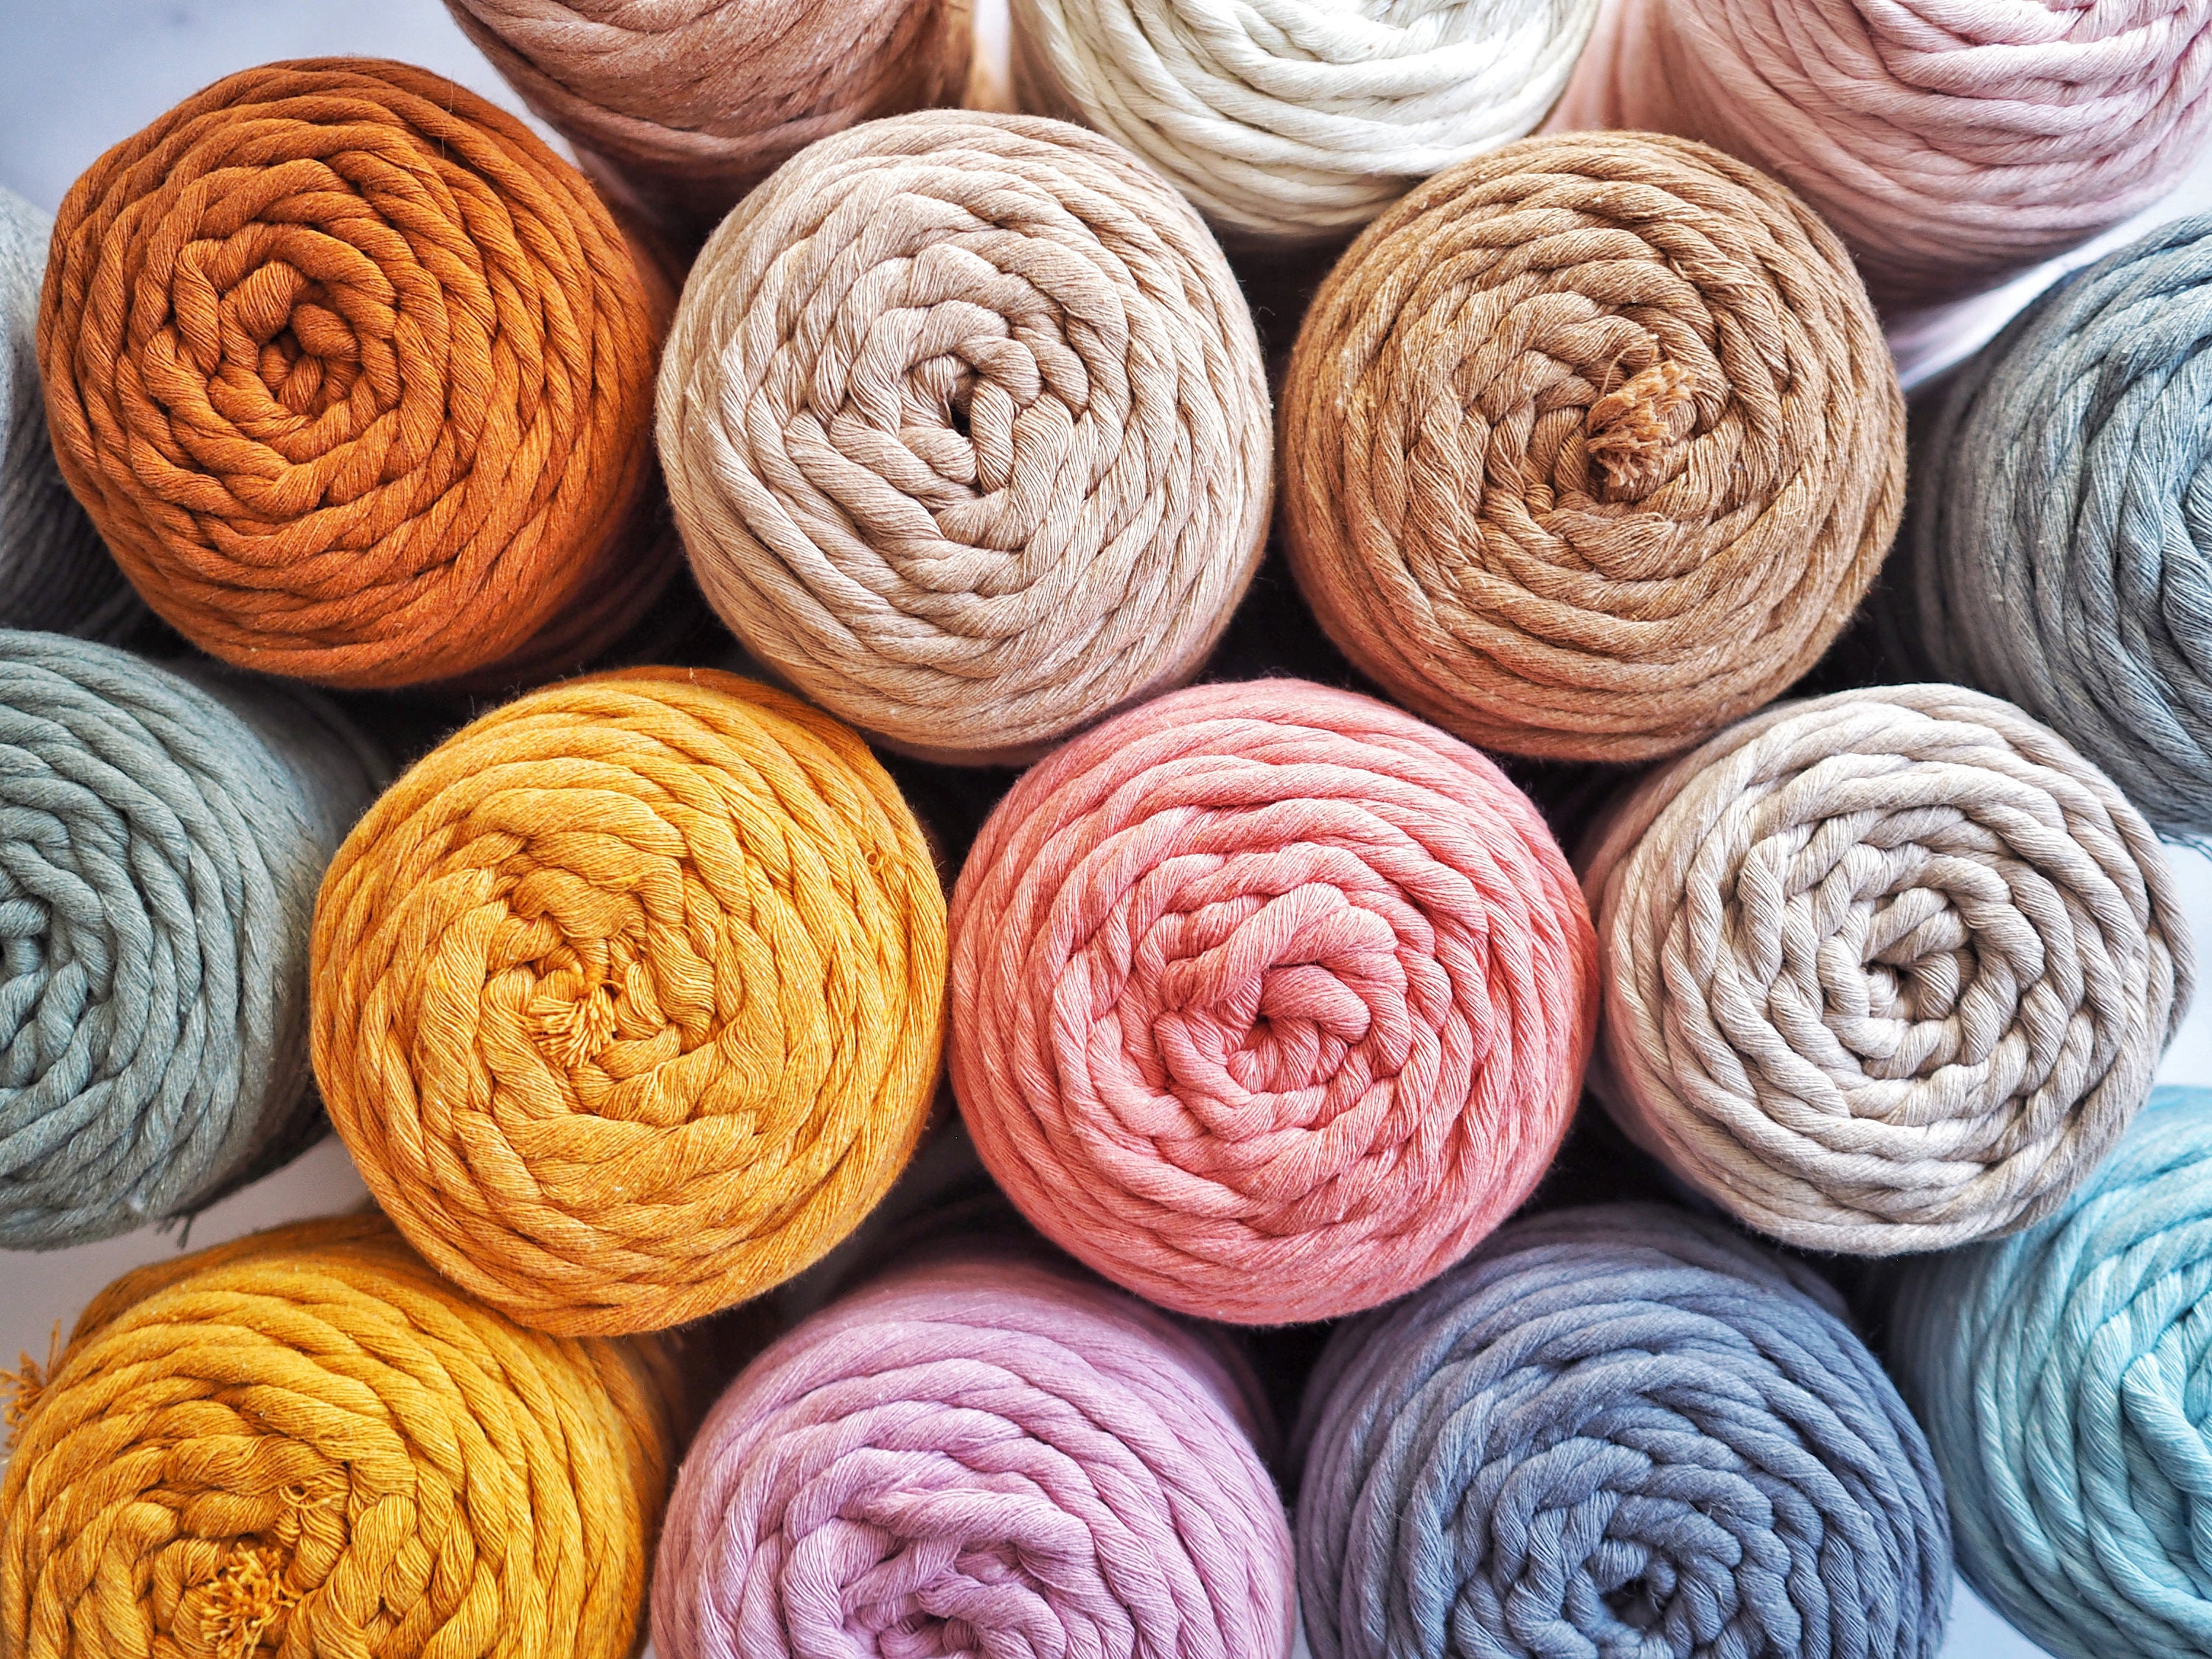 Hilo Macrame Algodon 5mm - Hilos para Hacer Pulseras Colores Cuerda Macrame  a Crochet Manualidades 50M Gris Algodon : .es: Hogar y cocina